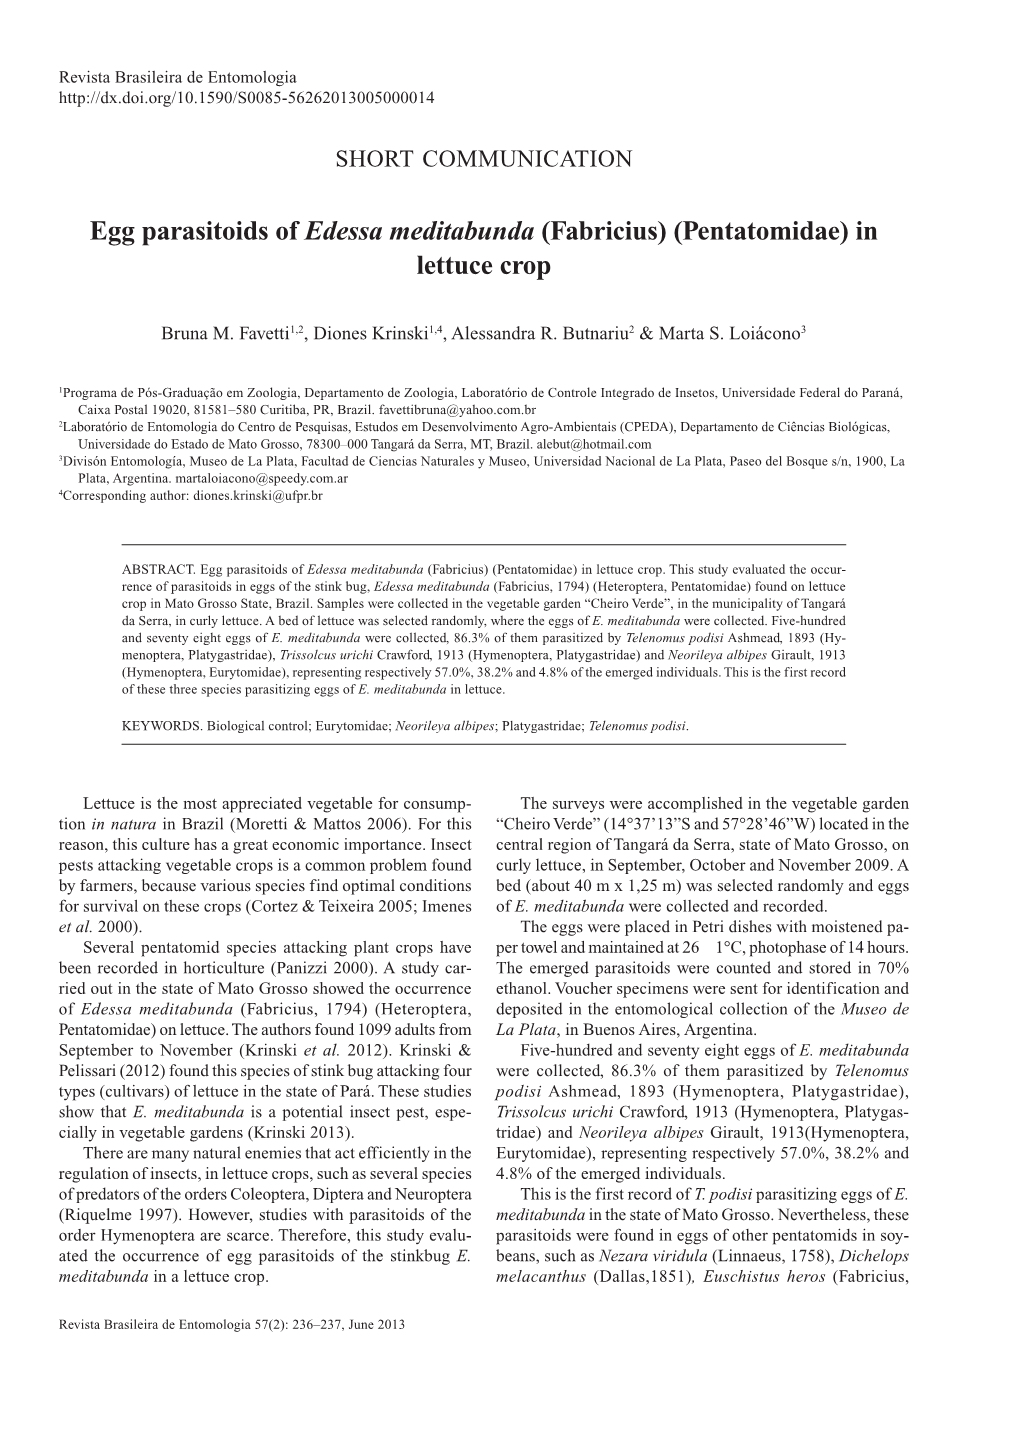 Egg Parasitoids of Edessa Meditabunda (Fabricius) (Pentatomidae) in Lettuce Crop